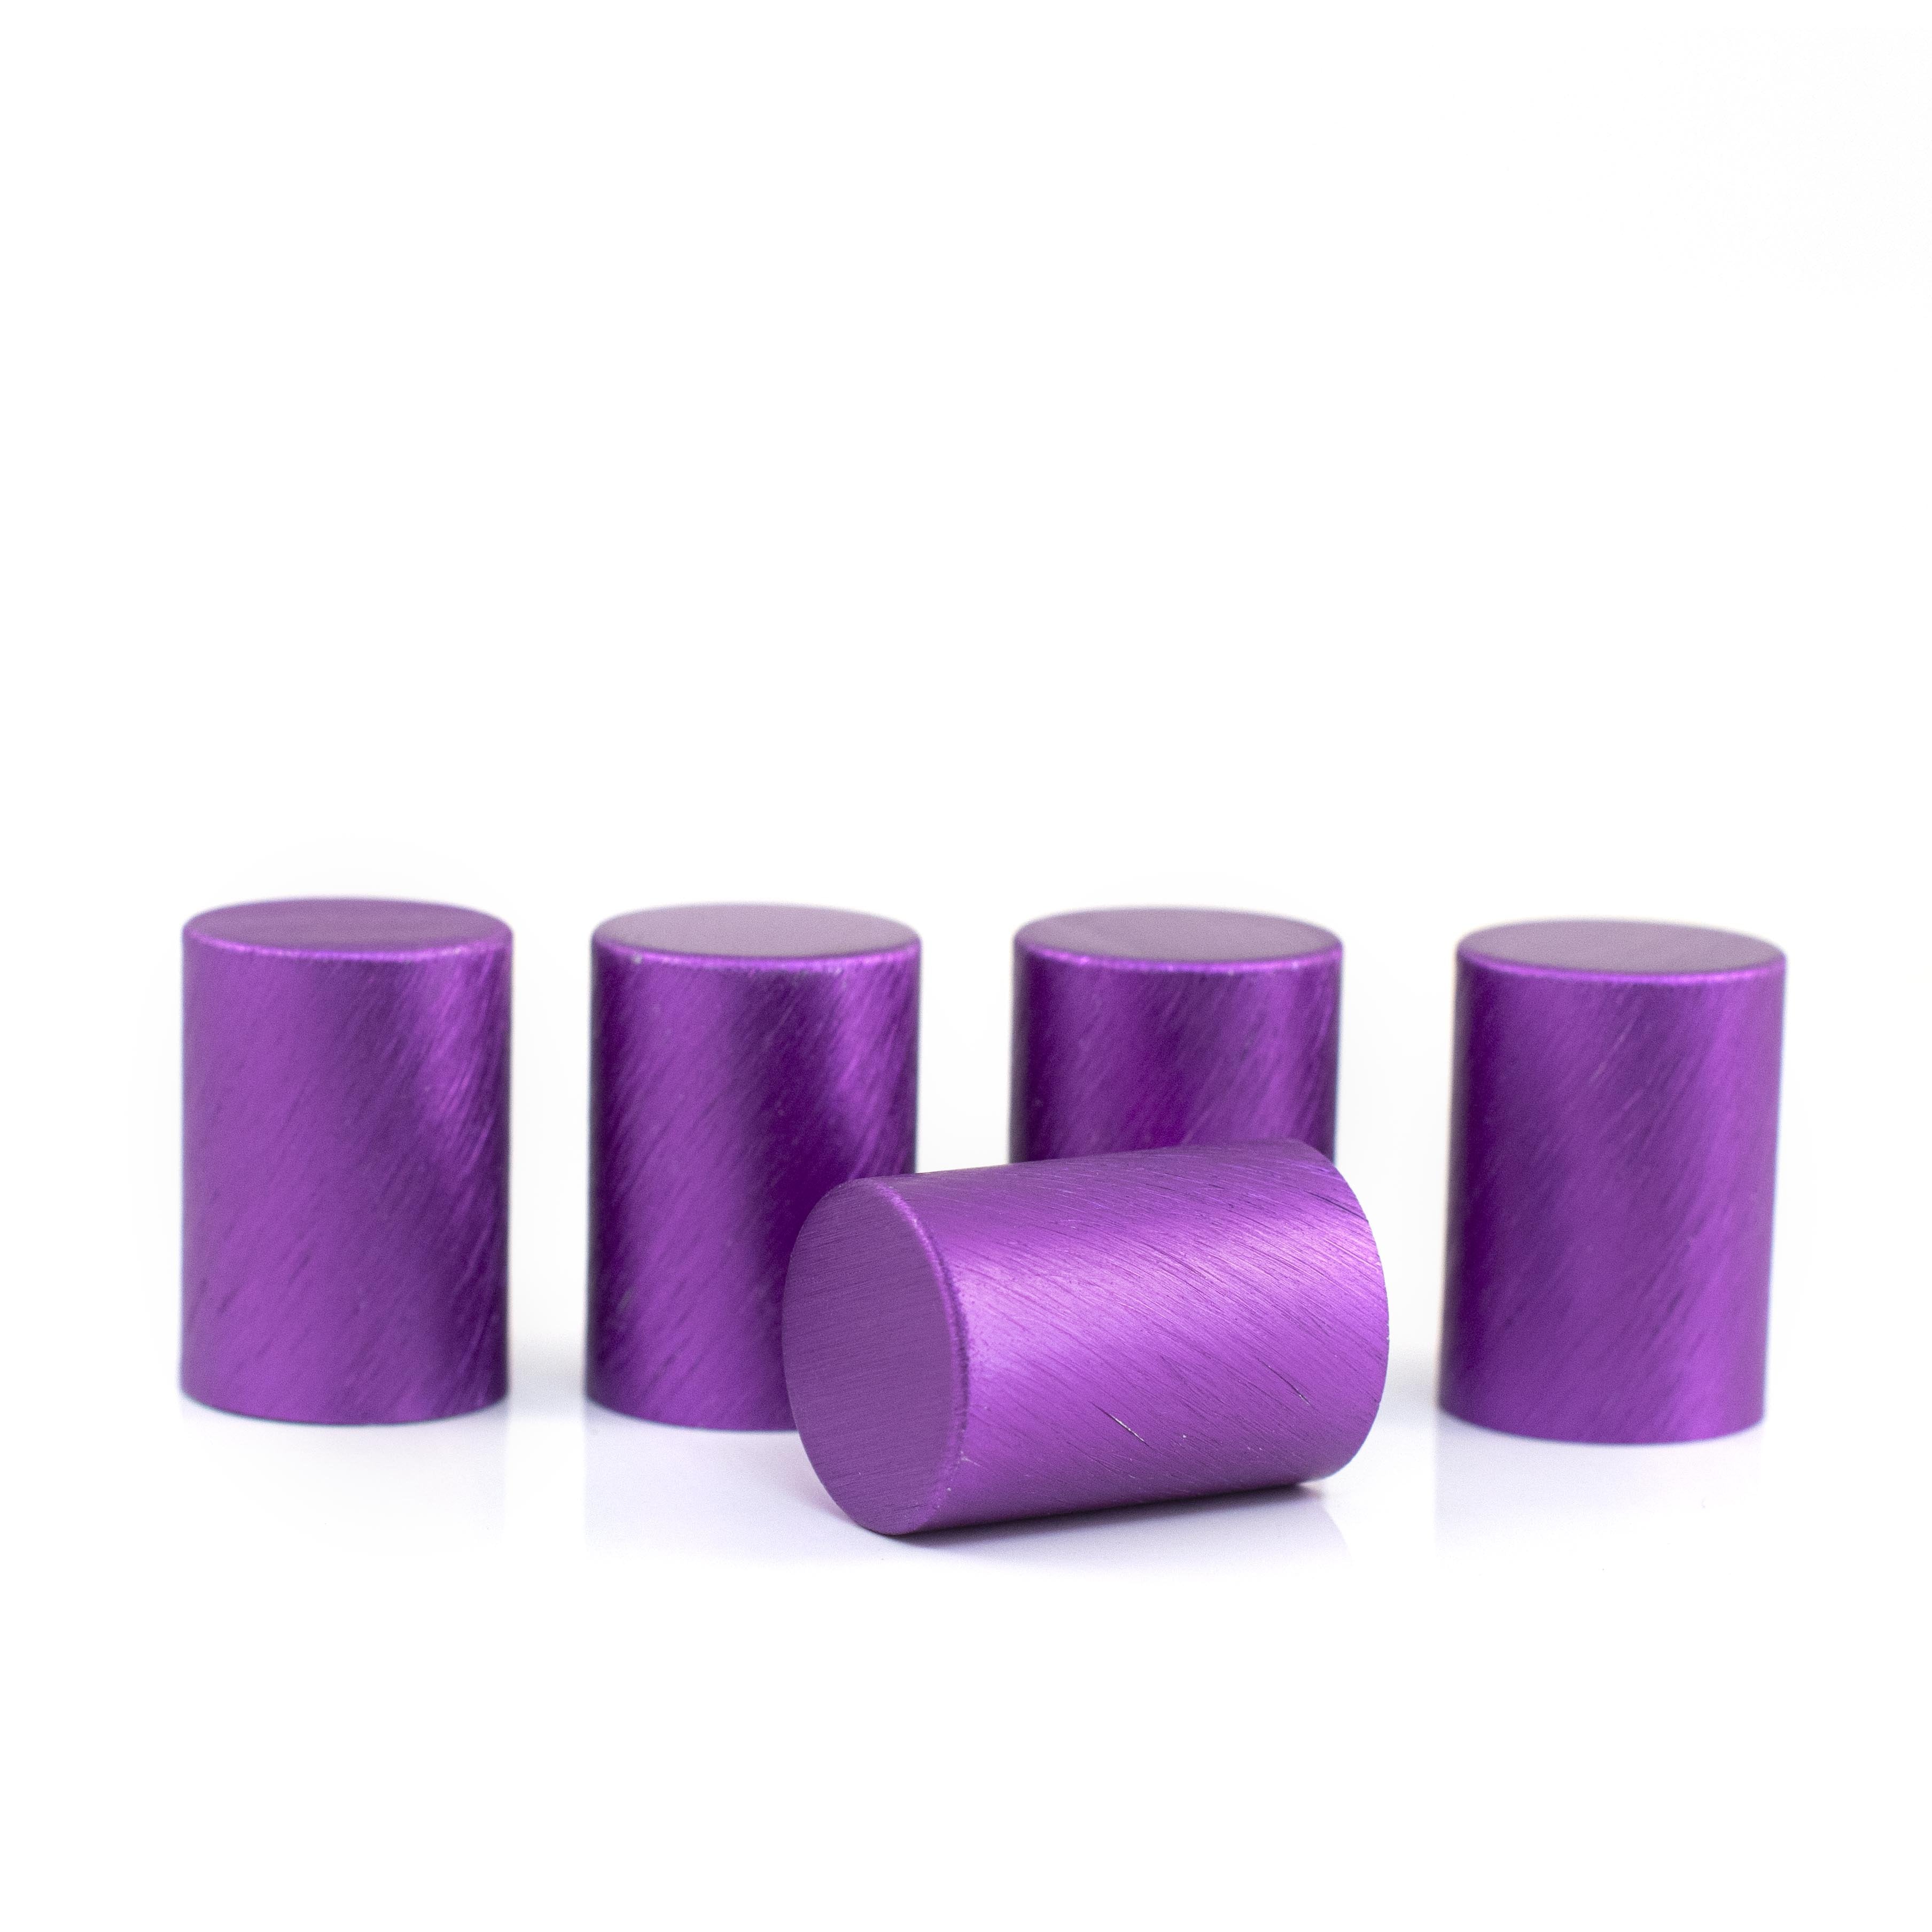 Fém kupakok (5 darab) Roll-on üveghengerhez, Lila színben